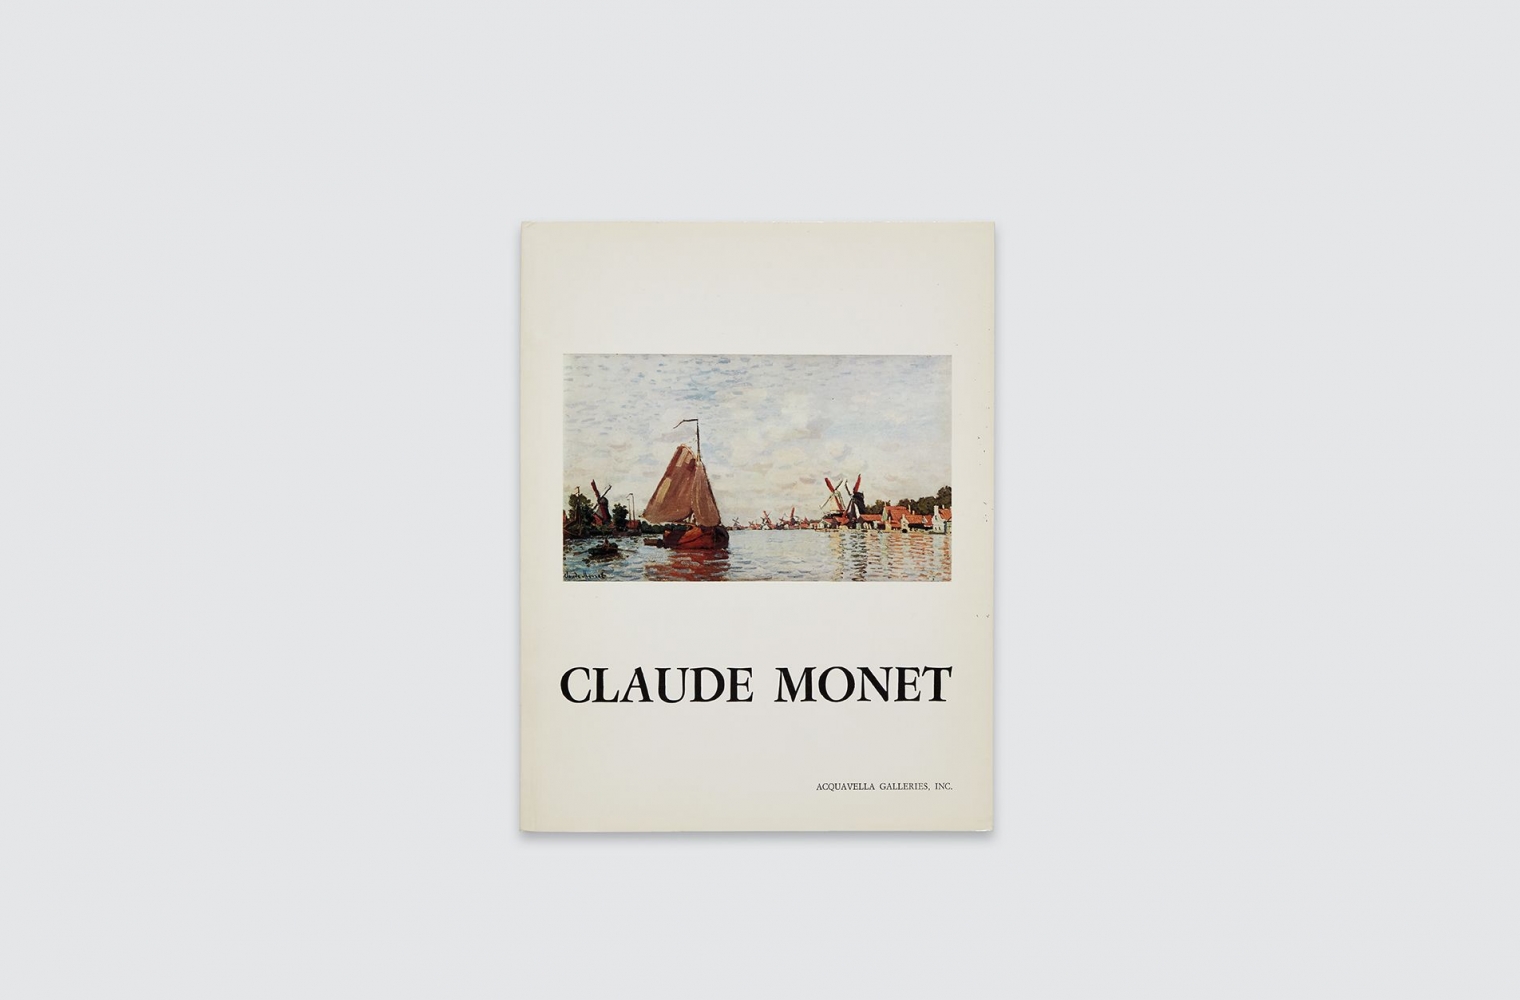 Catalogue for Claude Monet exhibition, fall 1976.